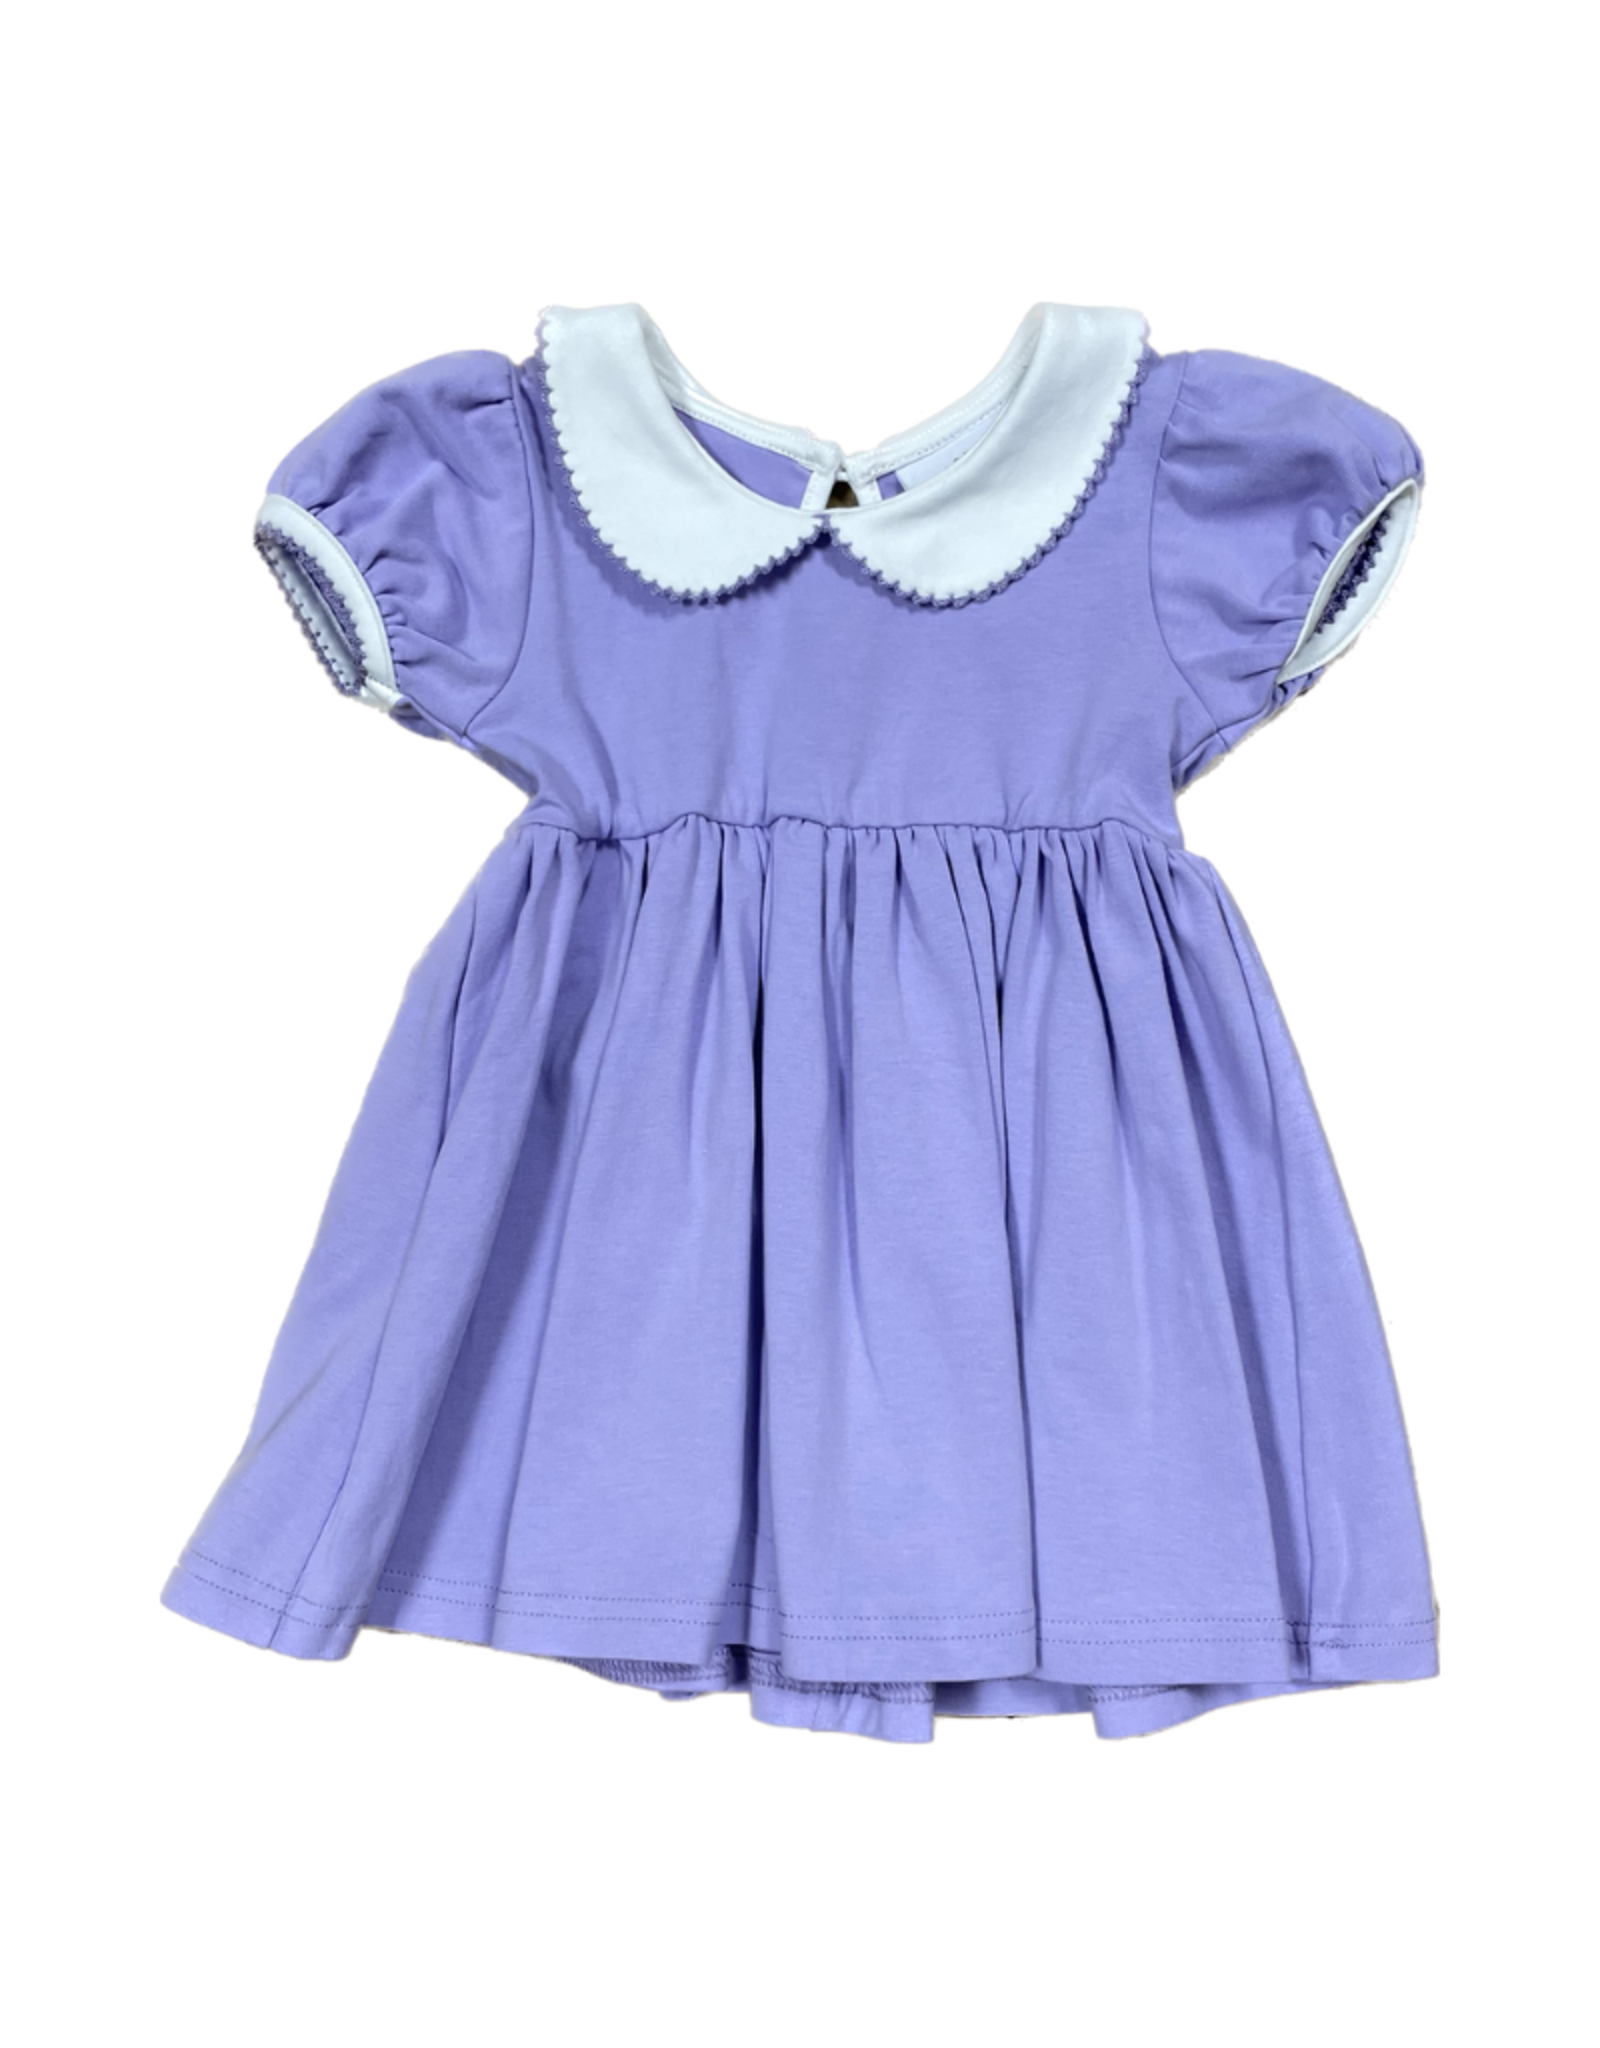 Lavender Knit Proper Dress